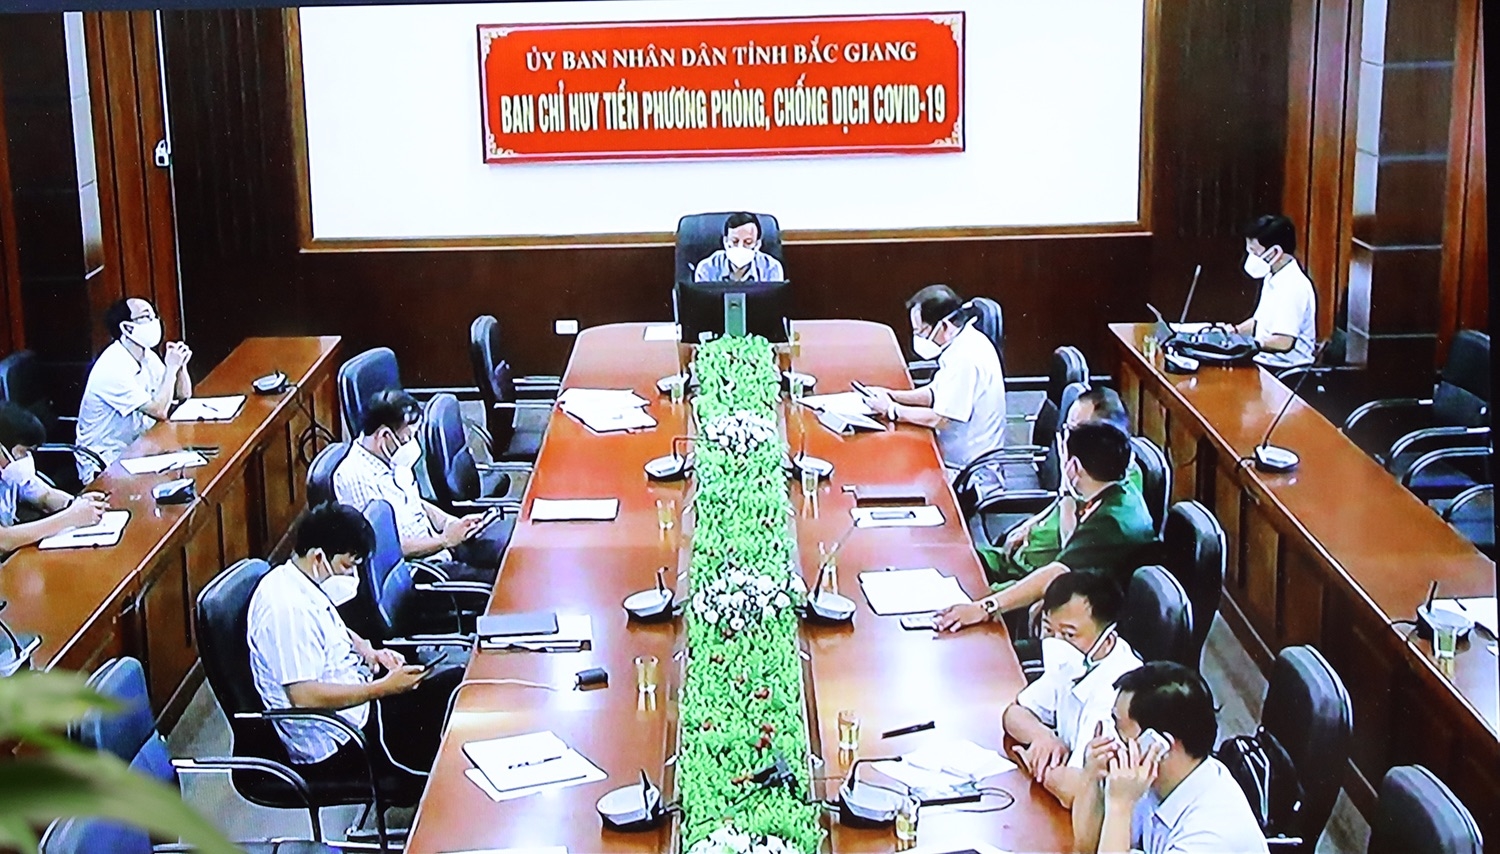 Ban Chỉ huy tiền phương của tỉnh BẮc Ginag trực tiếp báo cáo tình hình dịch bệnh tại huyện Việt Yên. Ảnh: VGP/Đình Nam